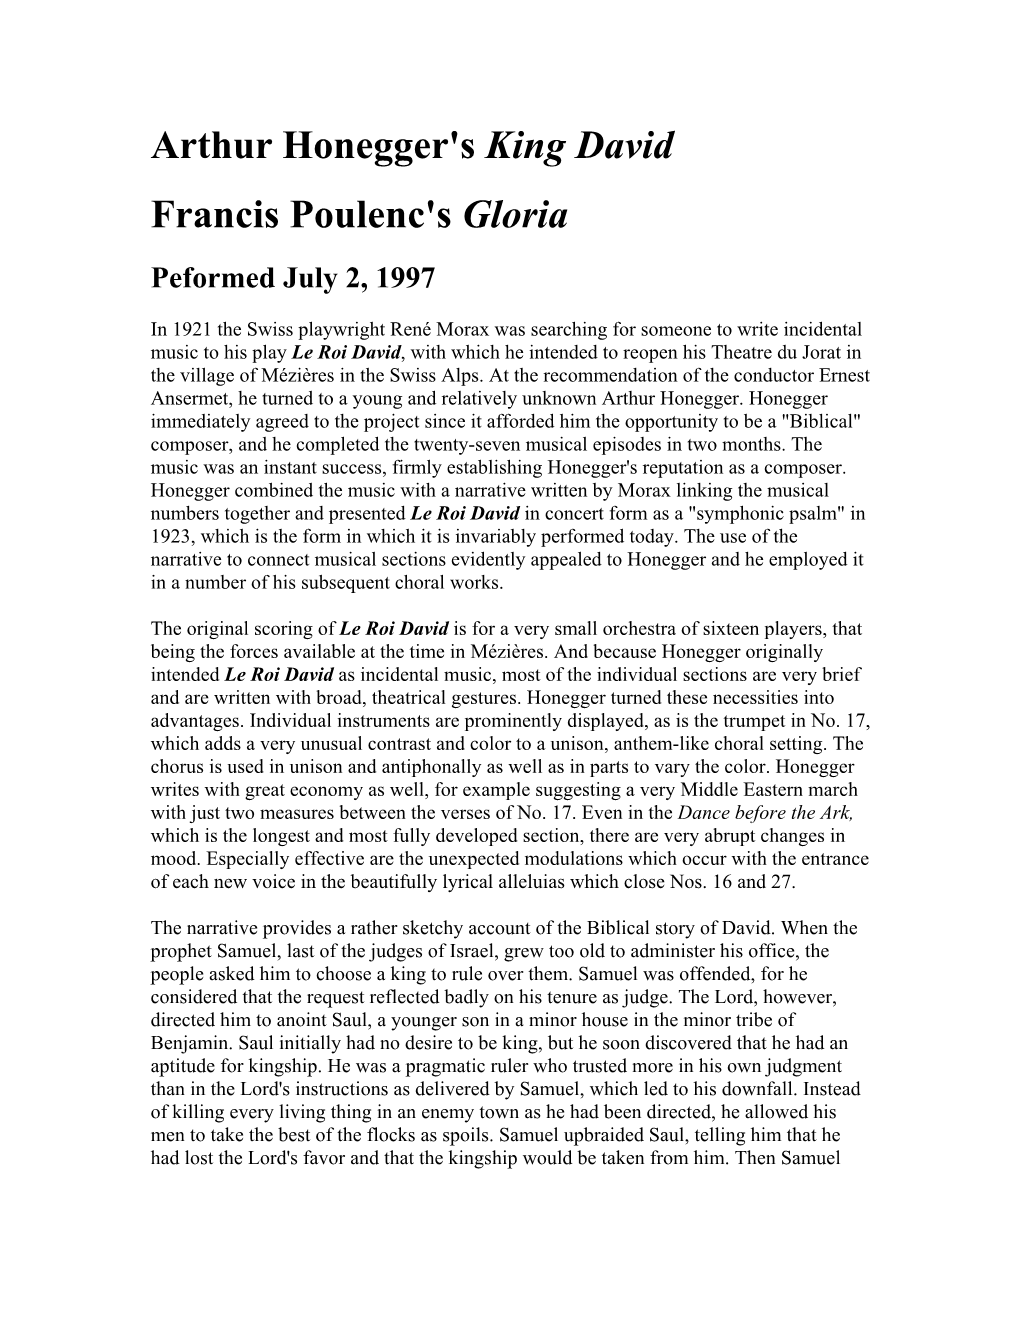 Arthur Honegger's King David Francis Poulenc's Gloria Peformed July 2, 1997